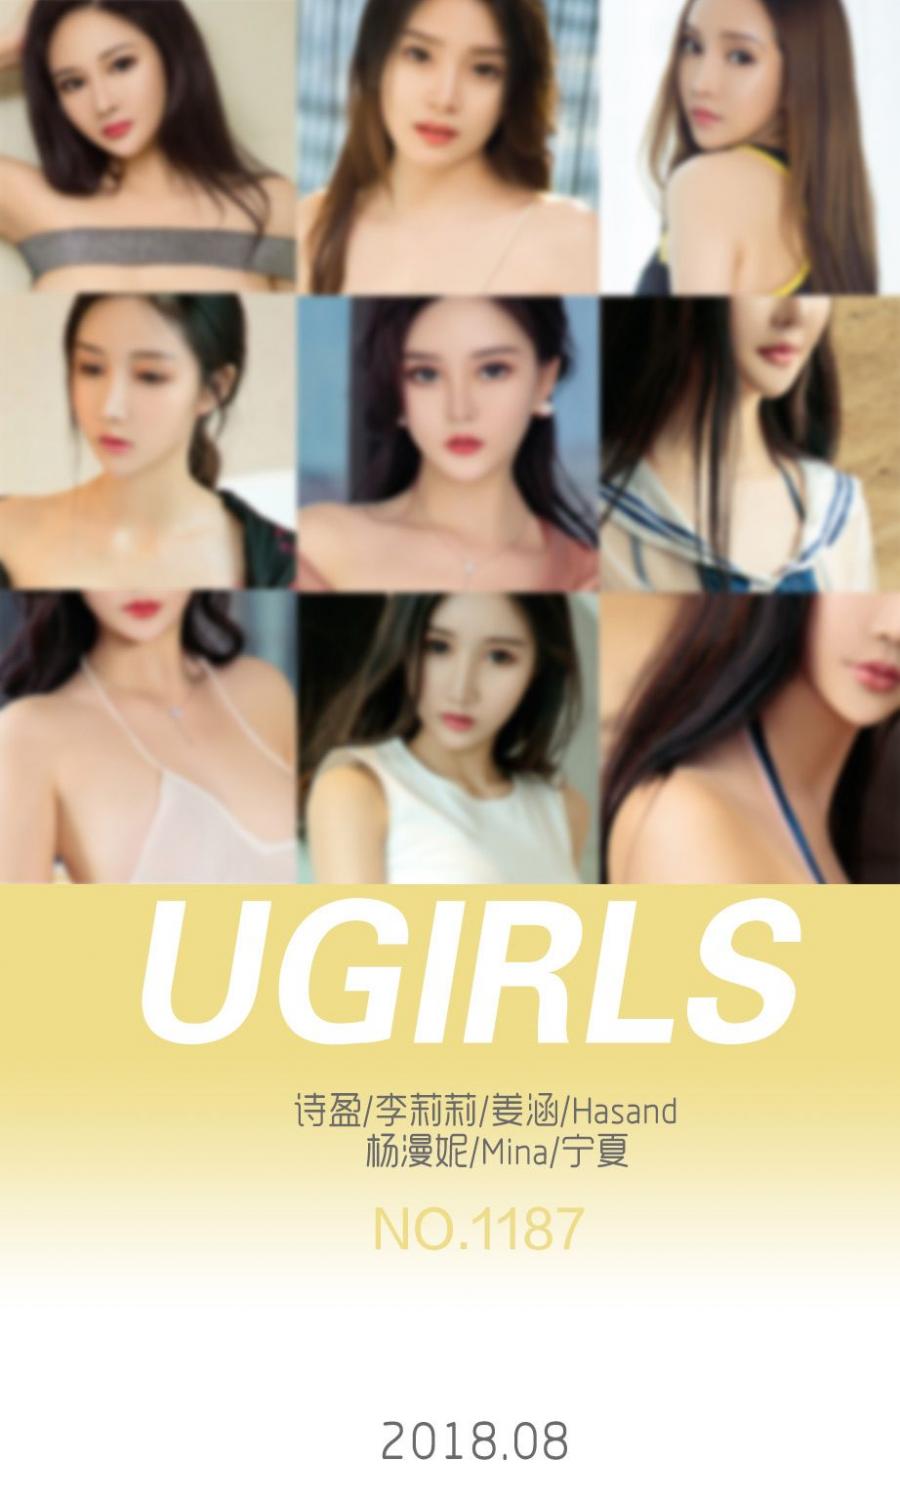 Ugirls App Vol. 008 Yang Man Ni